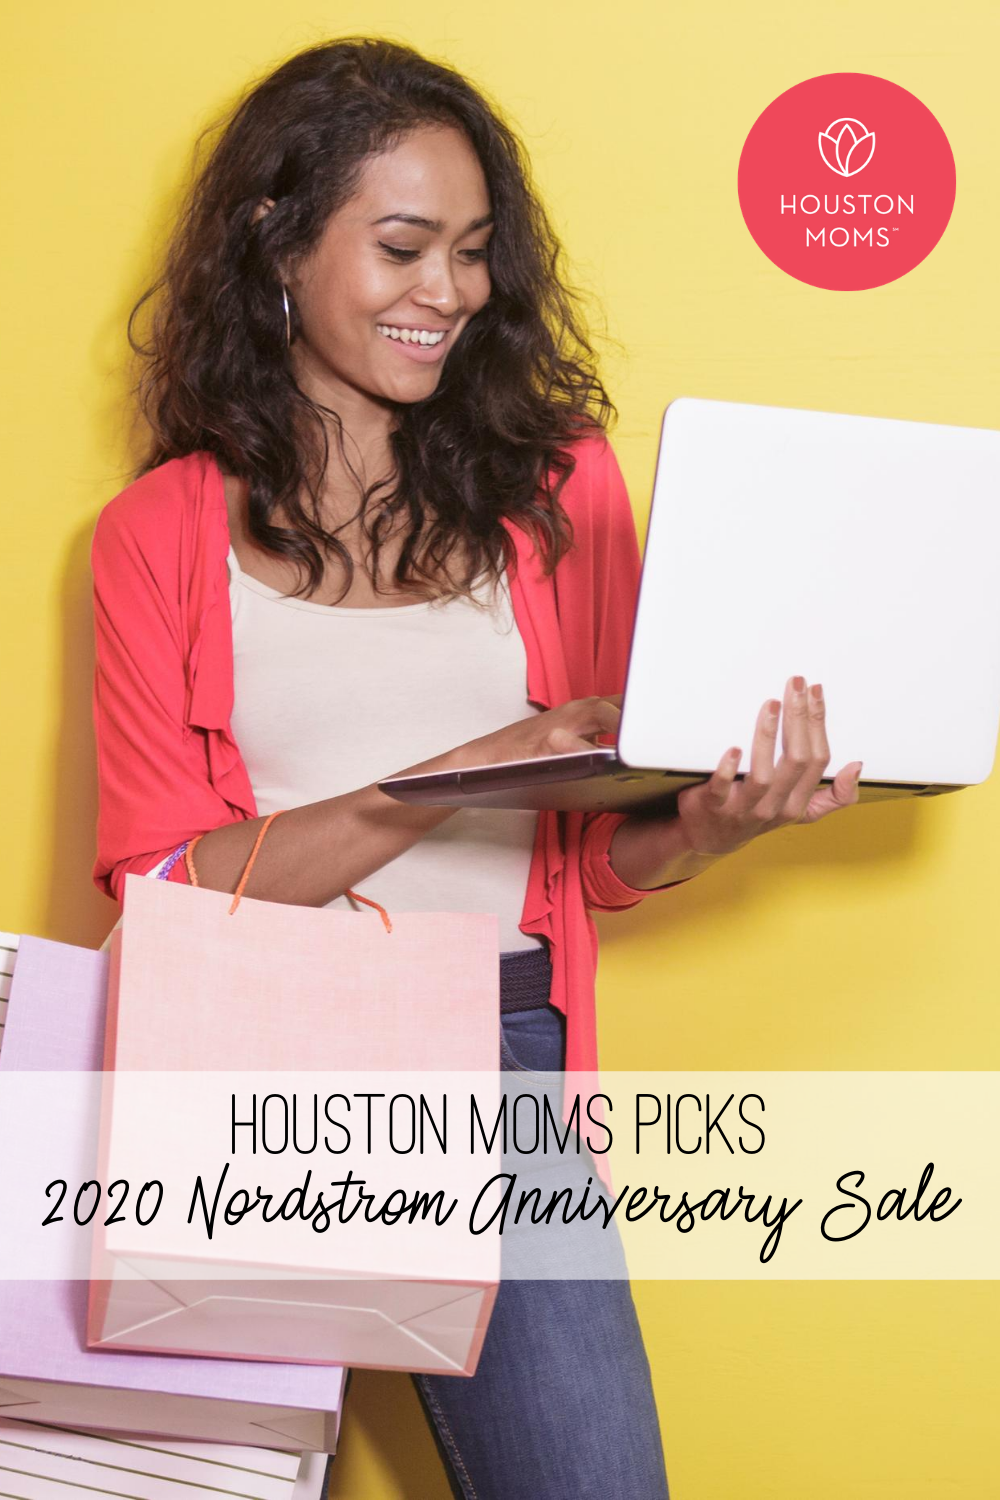 Houston Moms "Houston Moms Picks 2020 Nordstrom Anniversary Sale" #houstonmoms #houstonmomsblog #momsaroundhouston